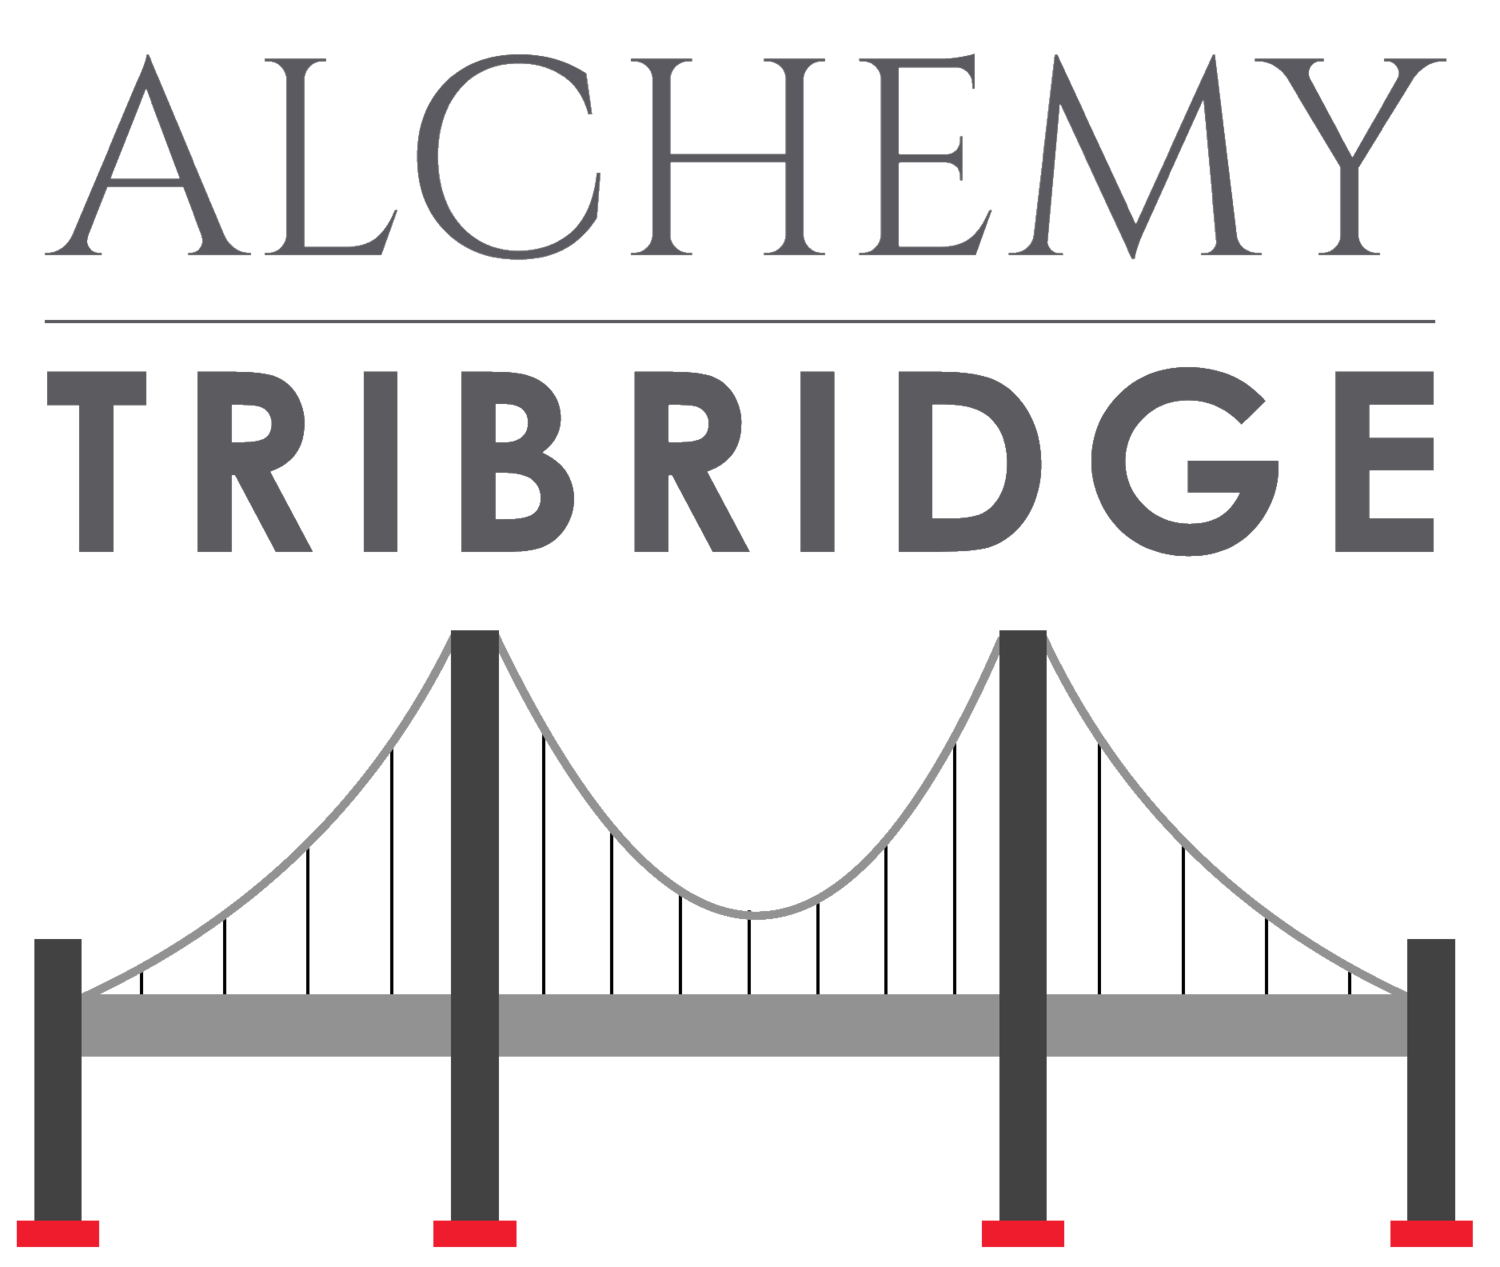 ALCHEMY TRIBRIDGE